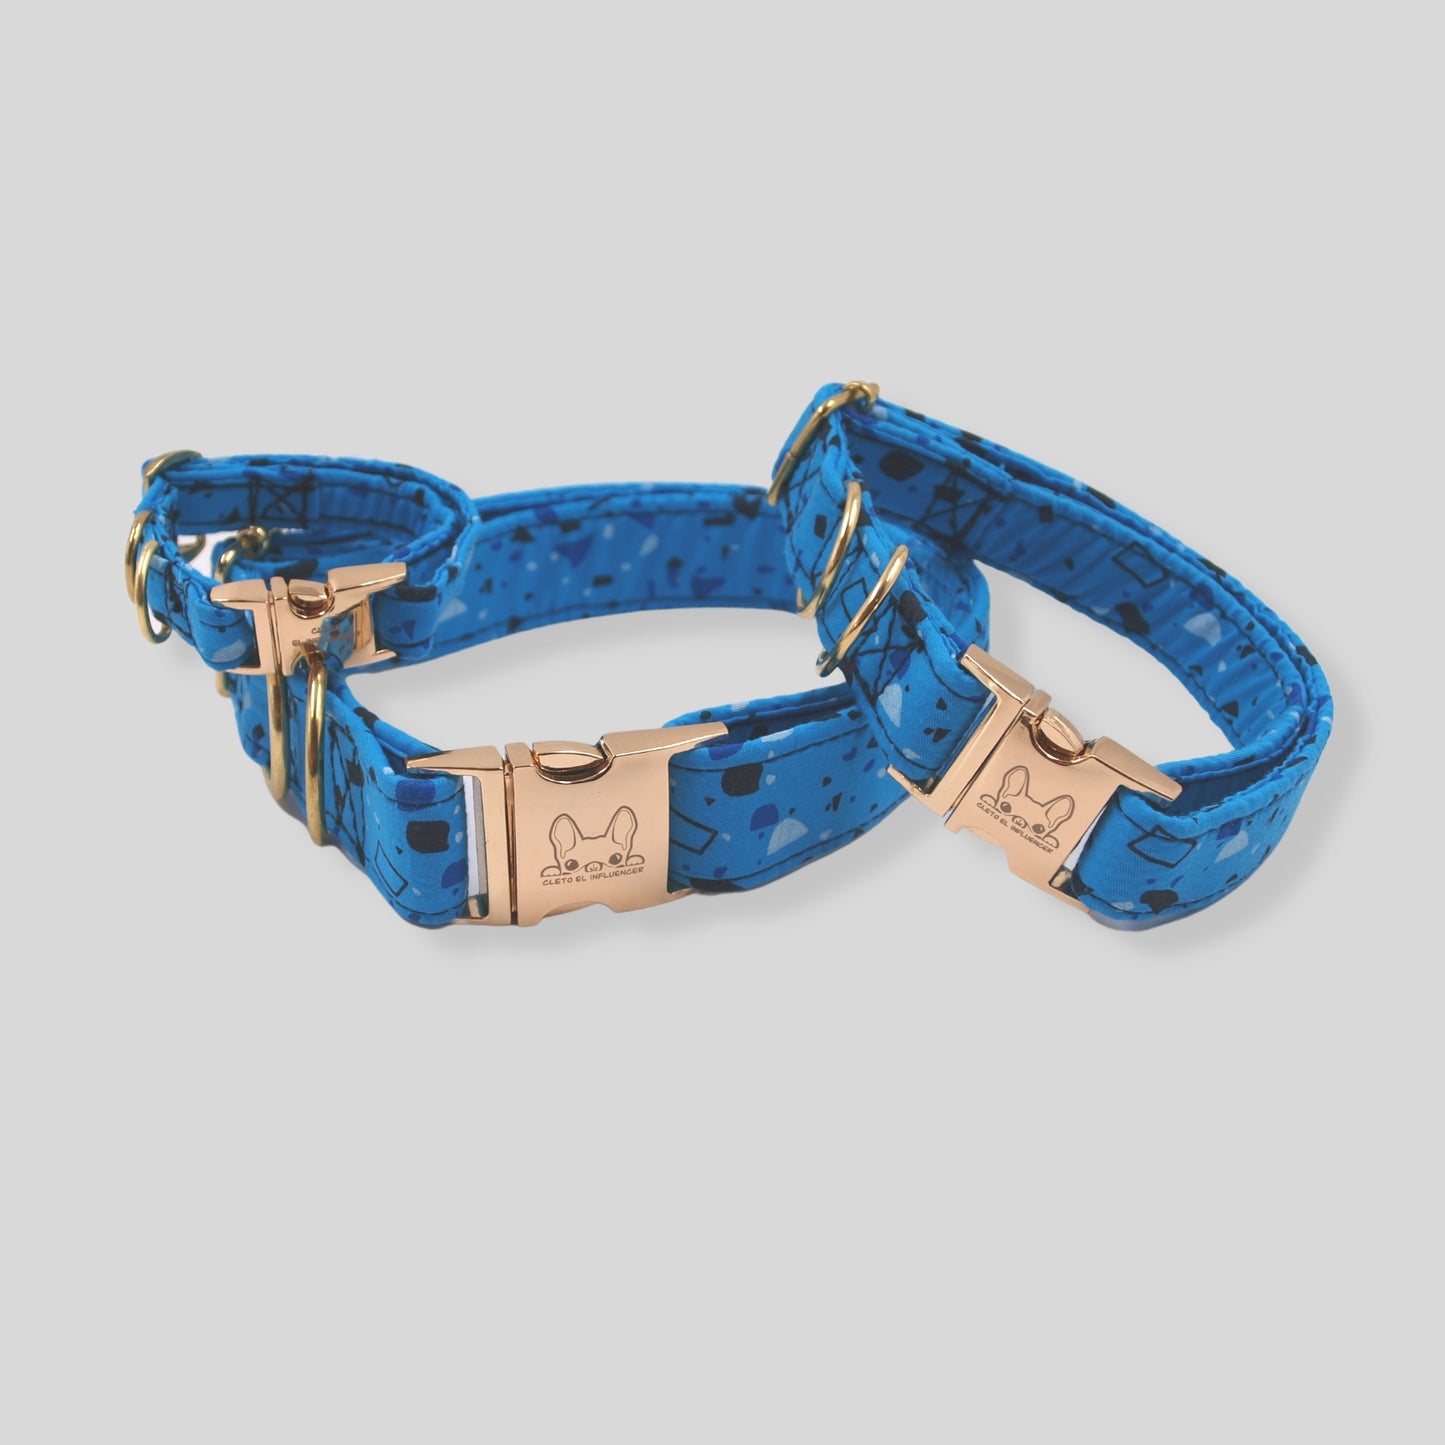 Collares para mascota con herrajes dorados, el collar es azul con formas geométricas en tonos azules.